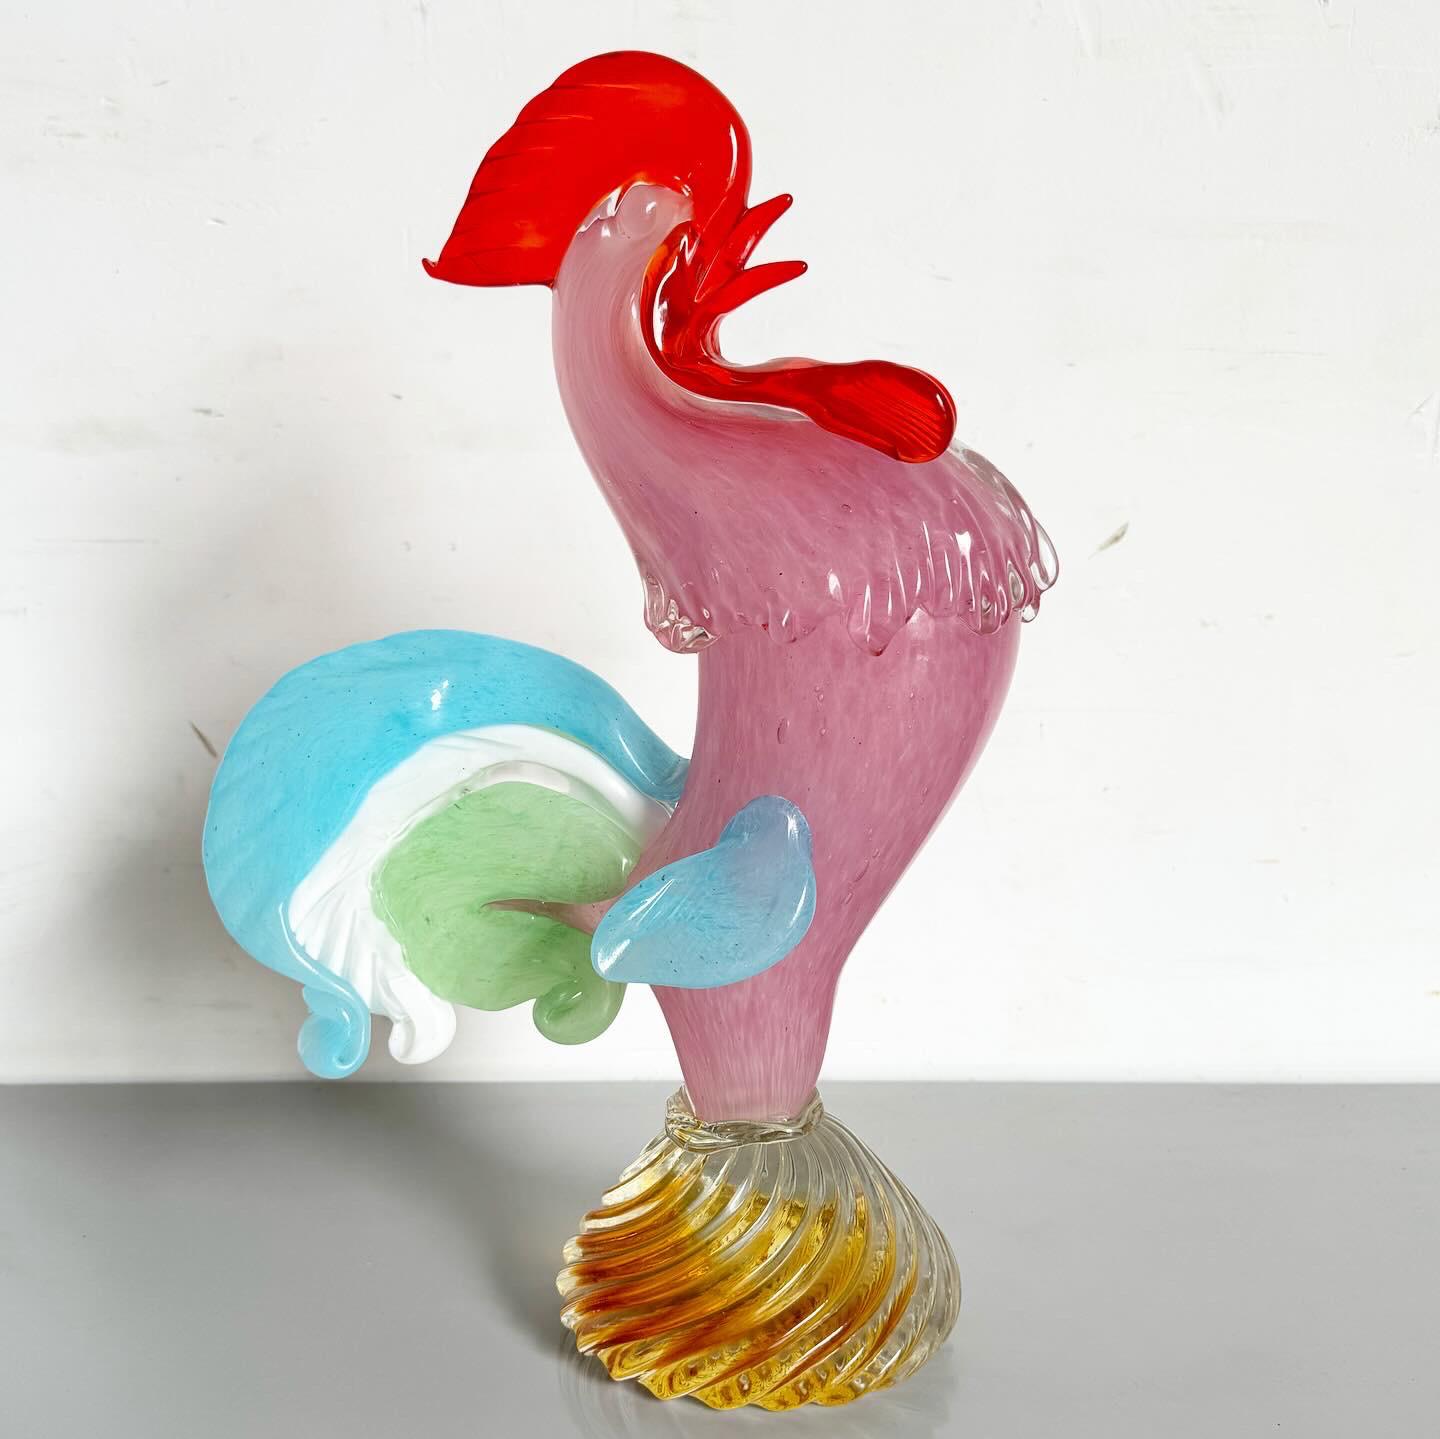 Découvrez le charme de l'artisanat post-moderne avec ce coq vintage en verre de Murano soufflé à la main. Chaque aspect de ce coq coloré est méticuleusement travaillé, affichant les couleurs et les motifs uniques synonymes de l'art du verre de